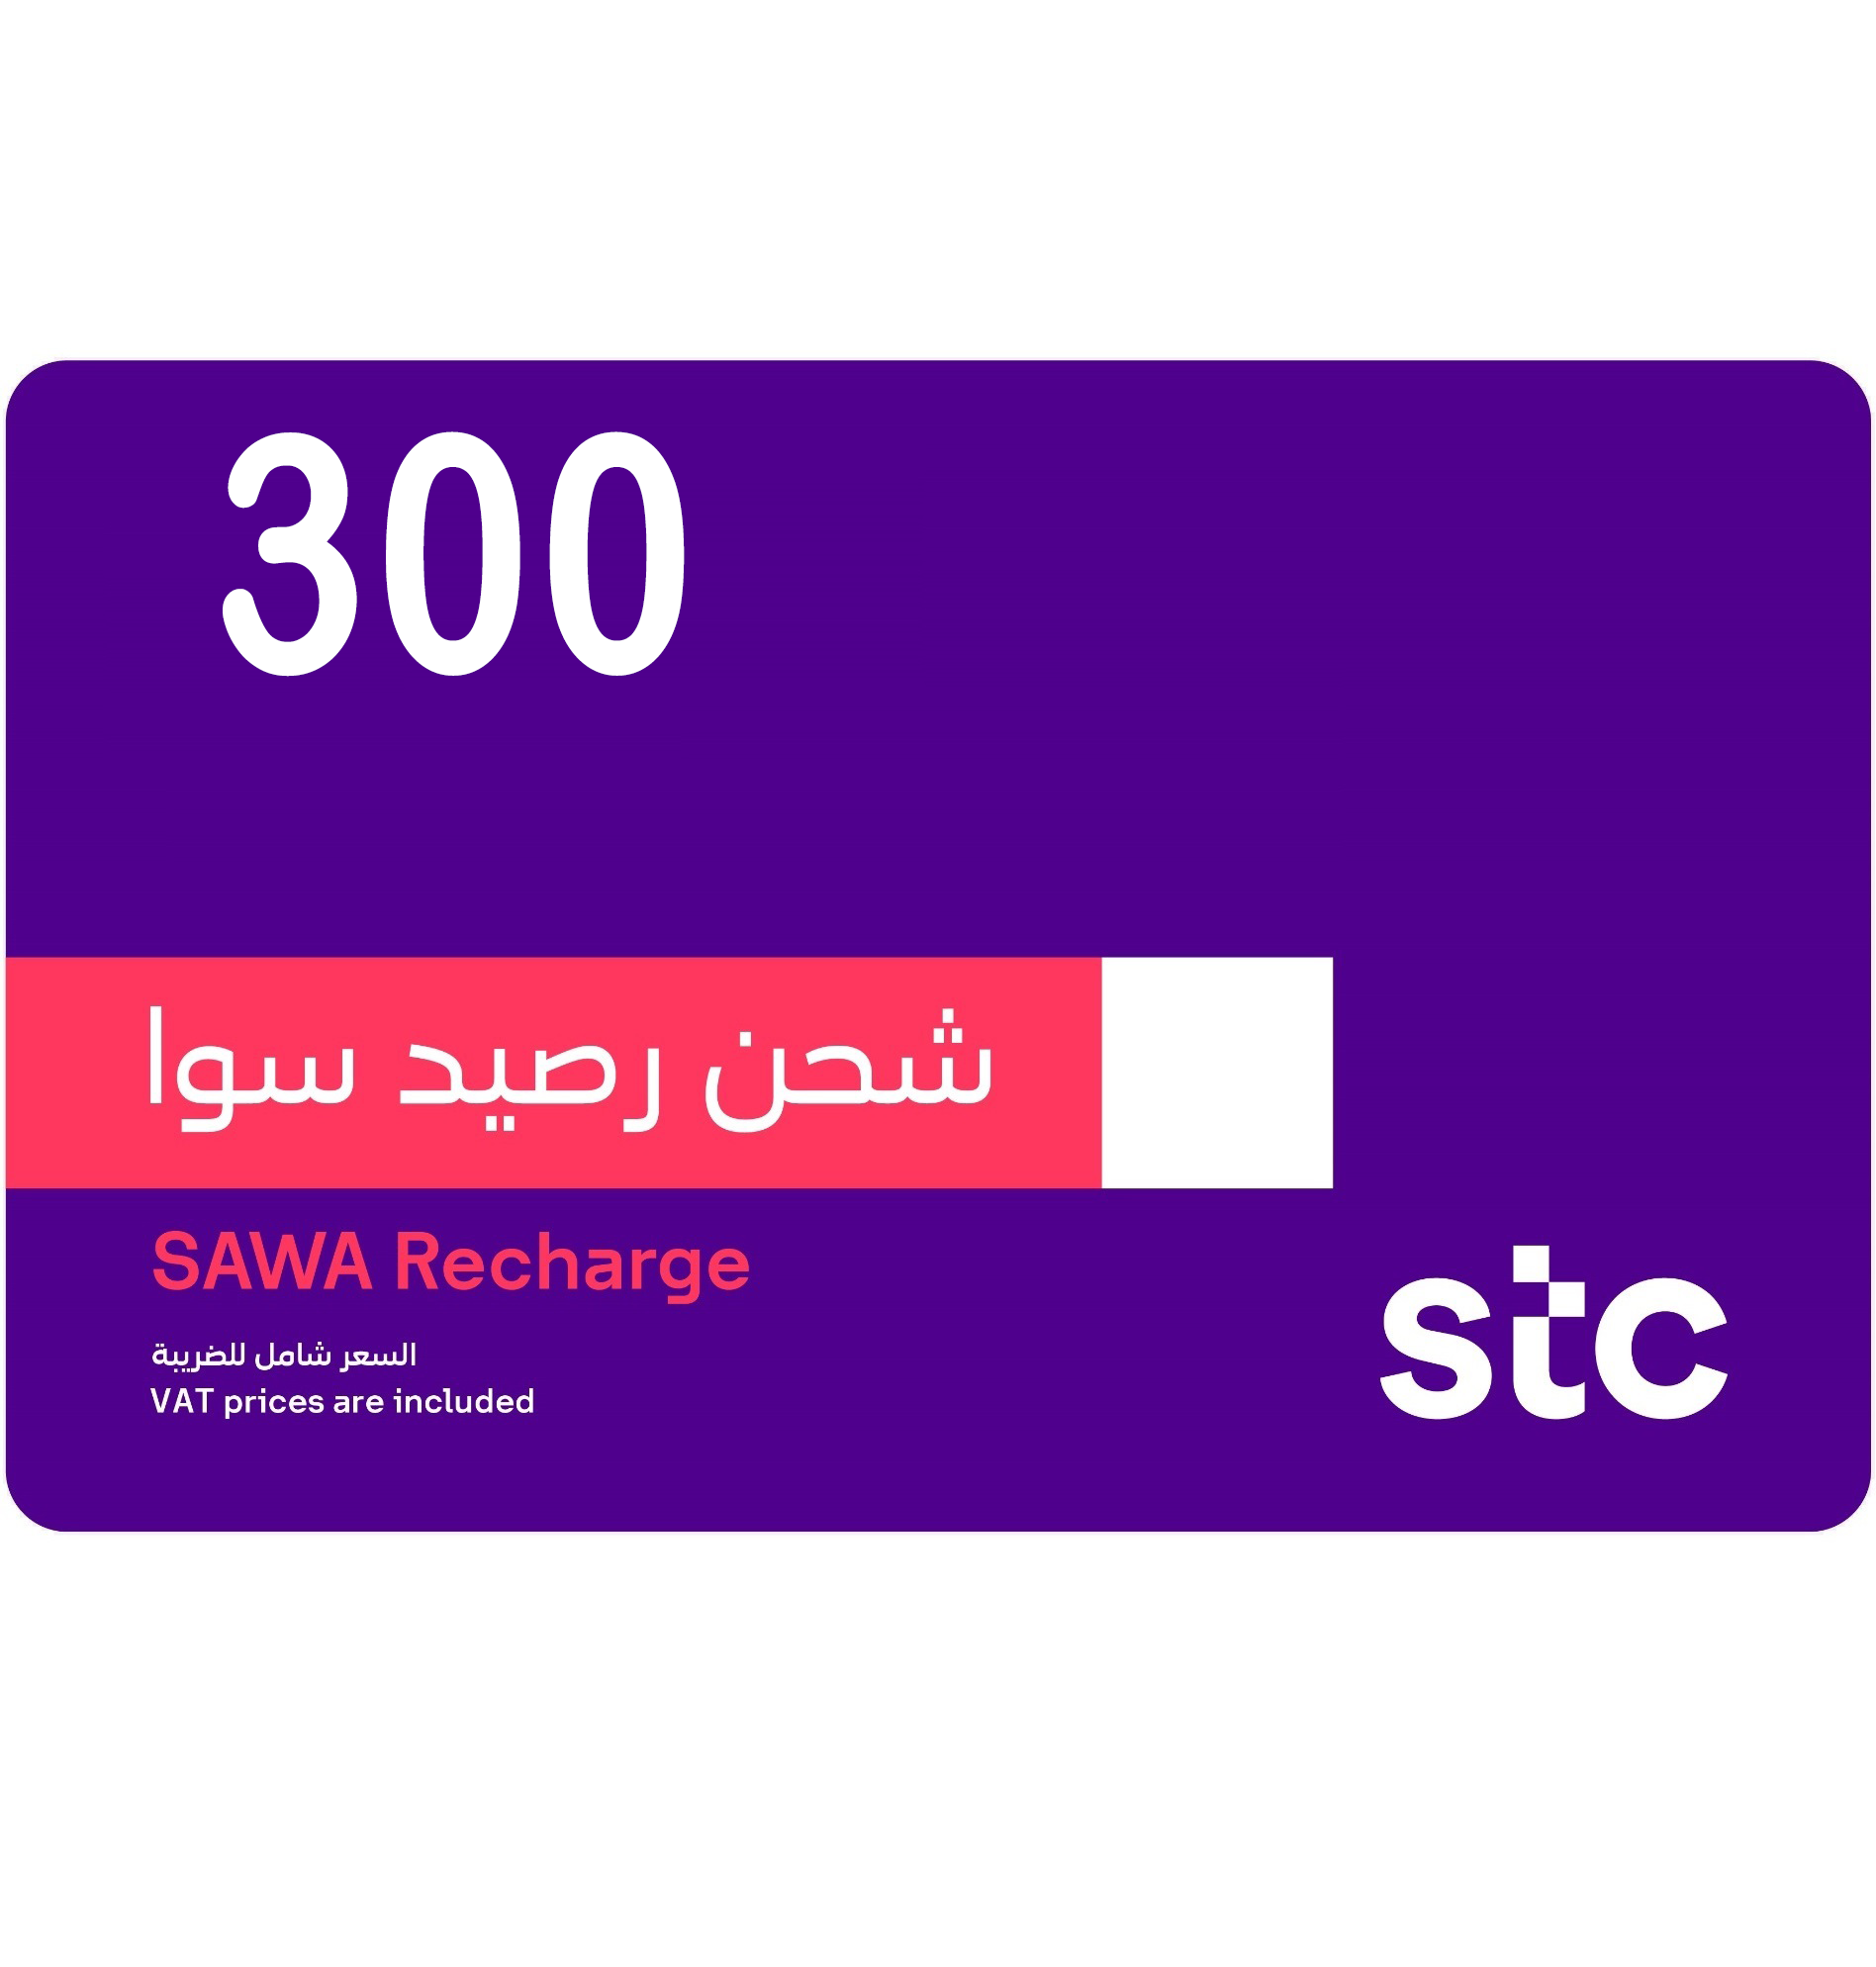 STC Recharge Card 300 SAR - KSA